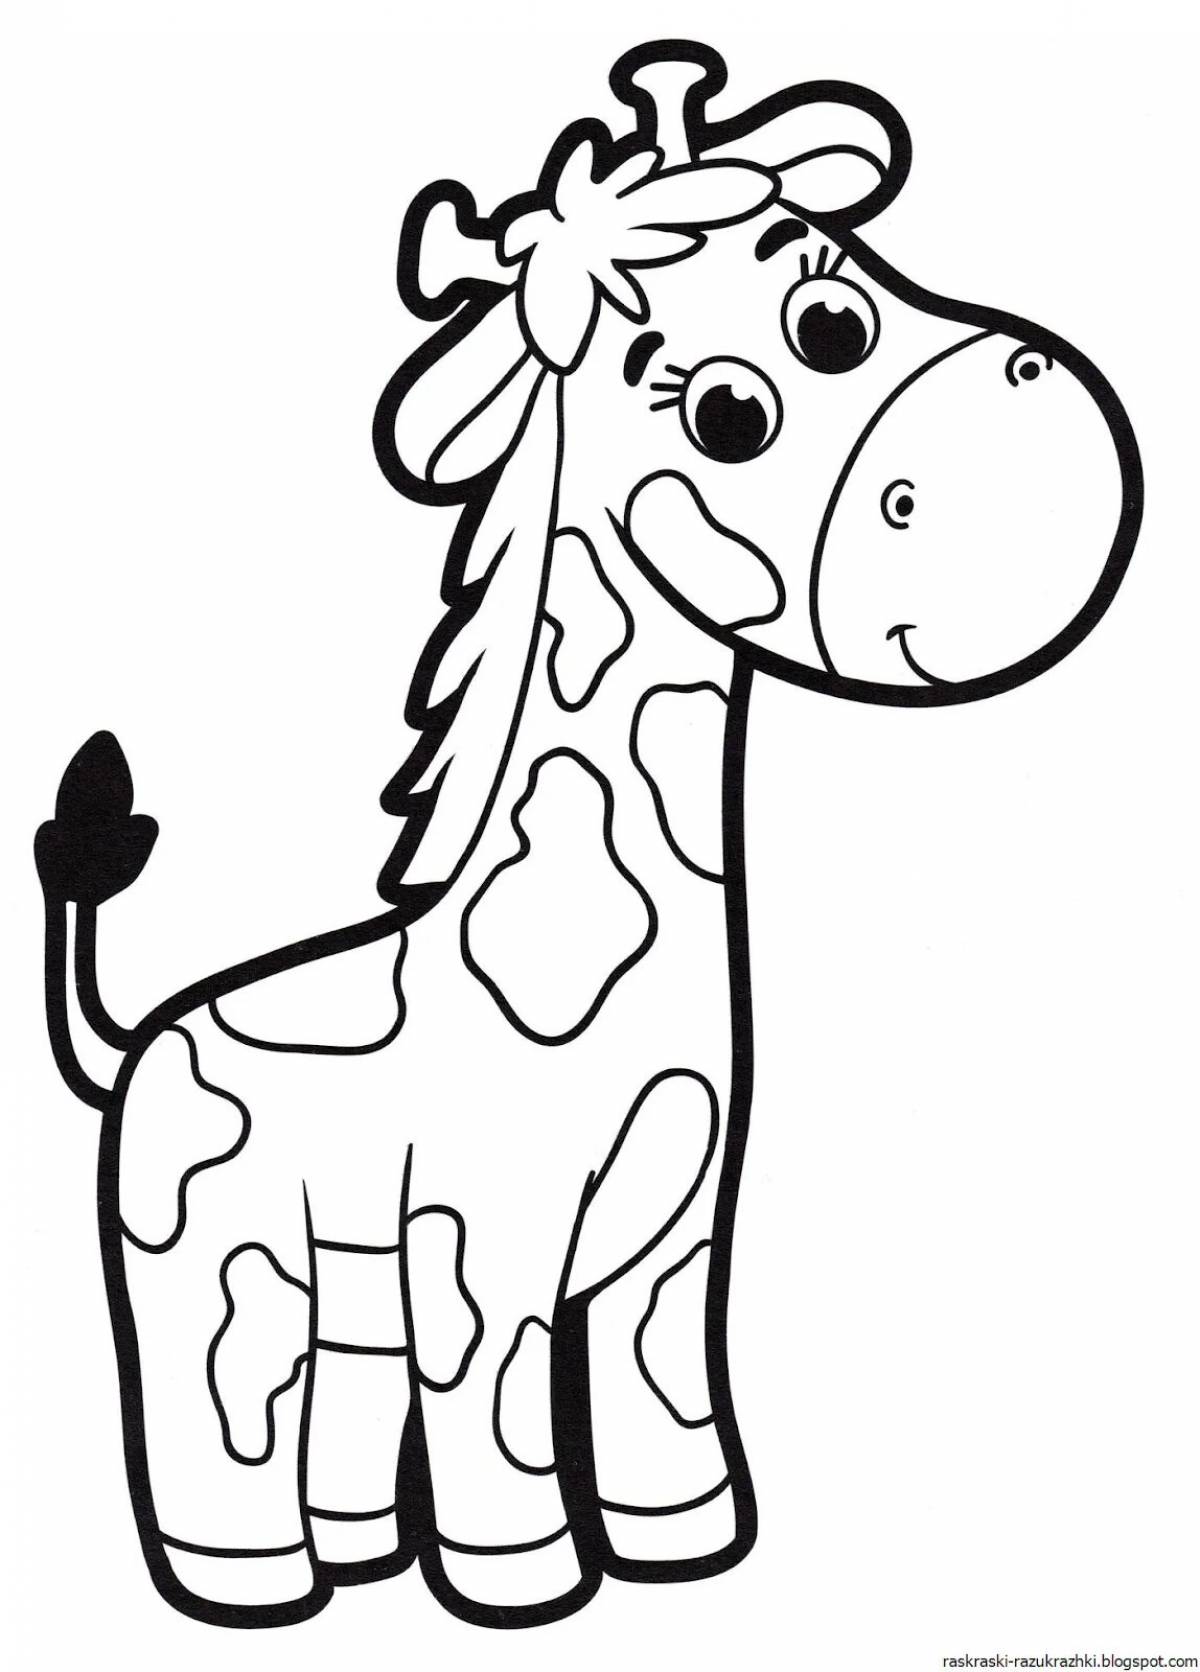 Развлекательная раскраска жирафа для детей